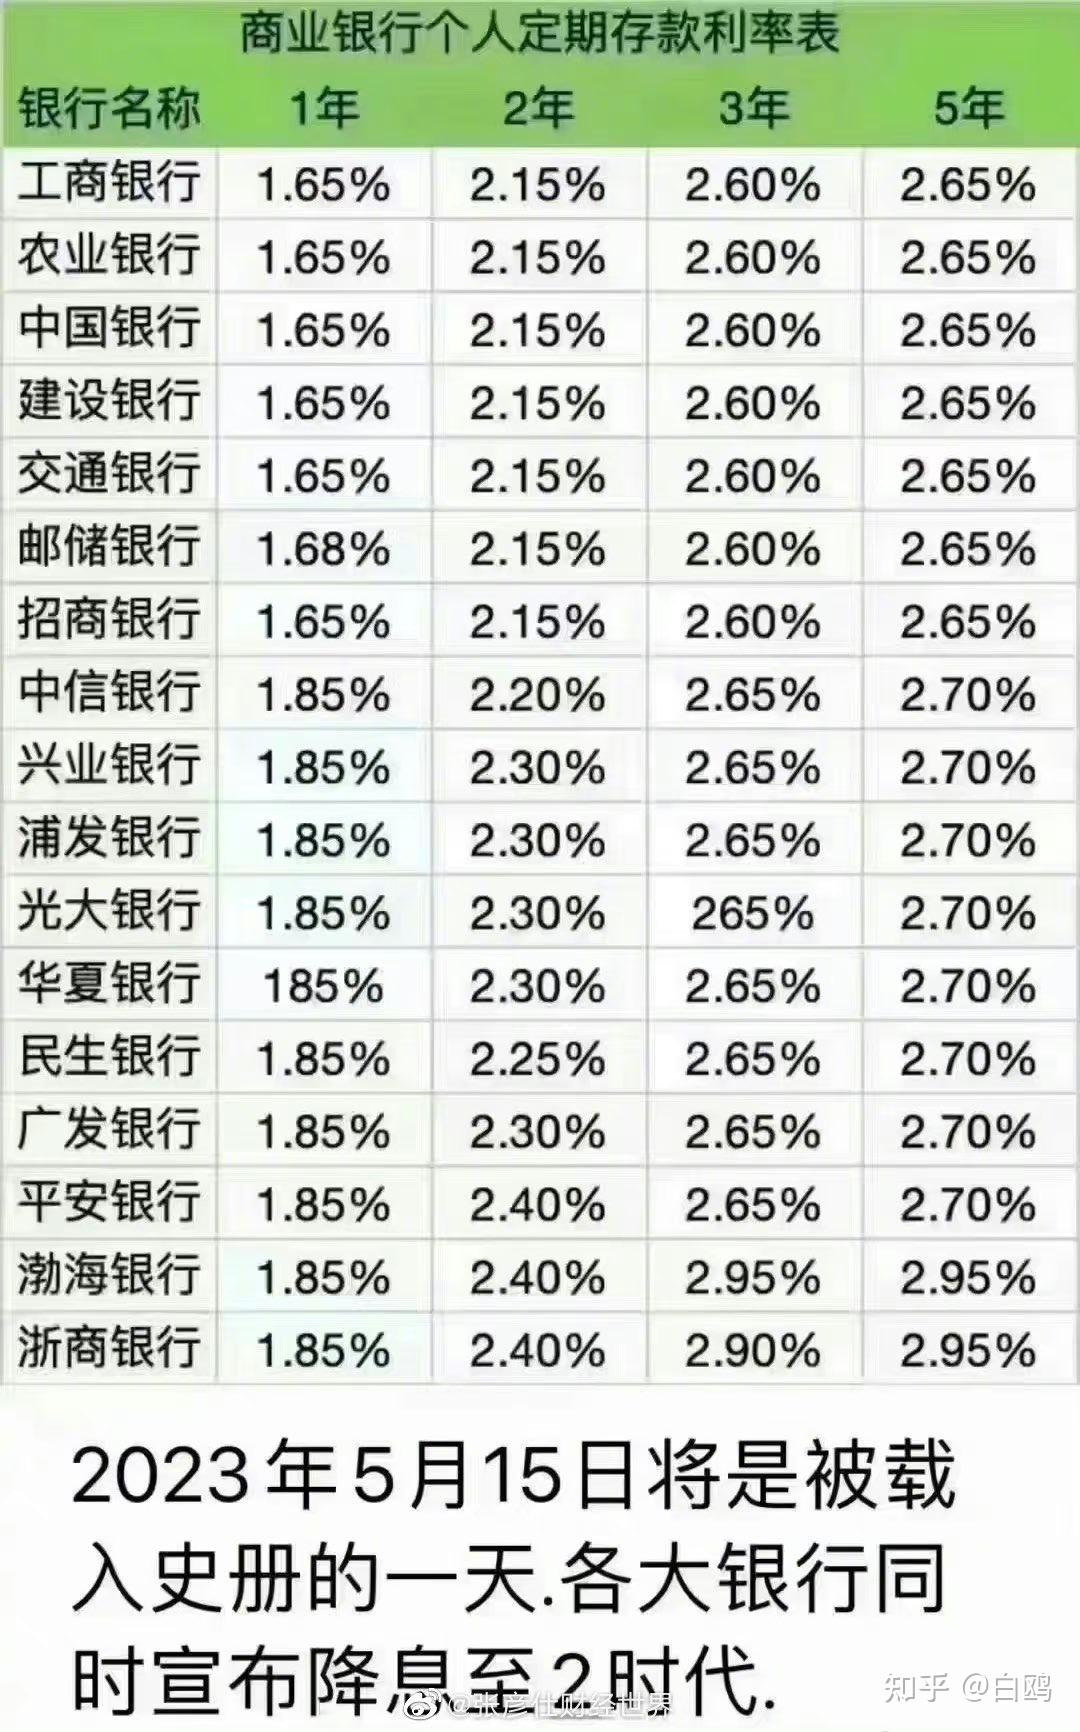 中国商业银行目前存款利率